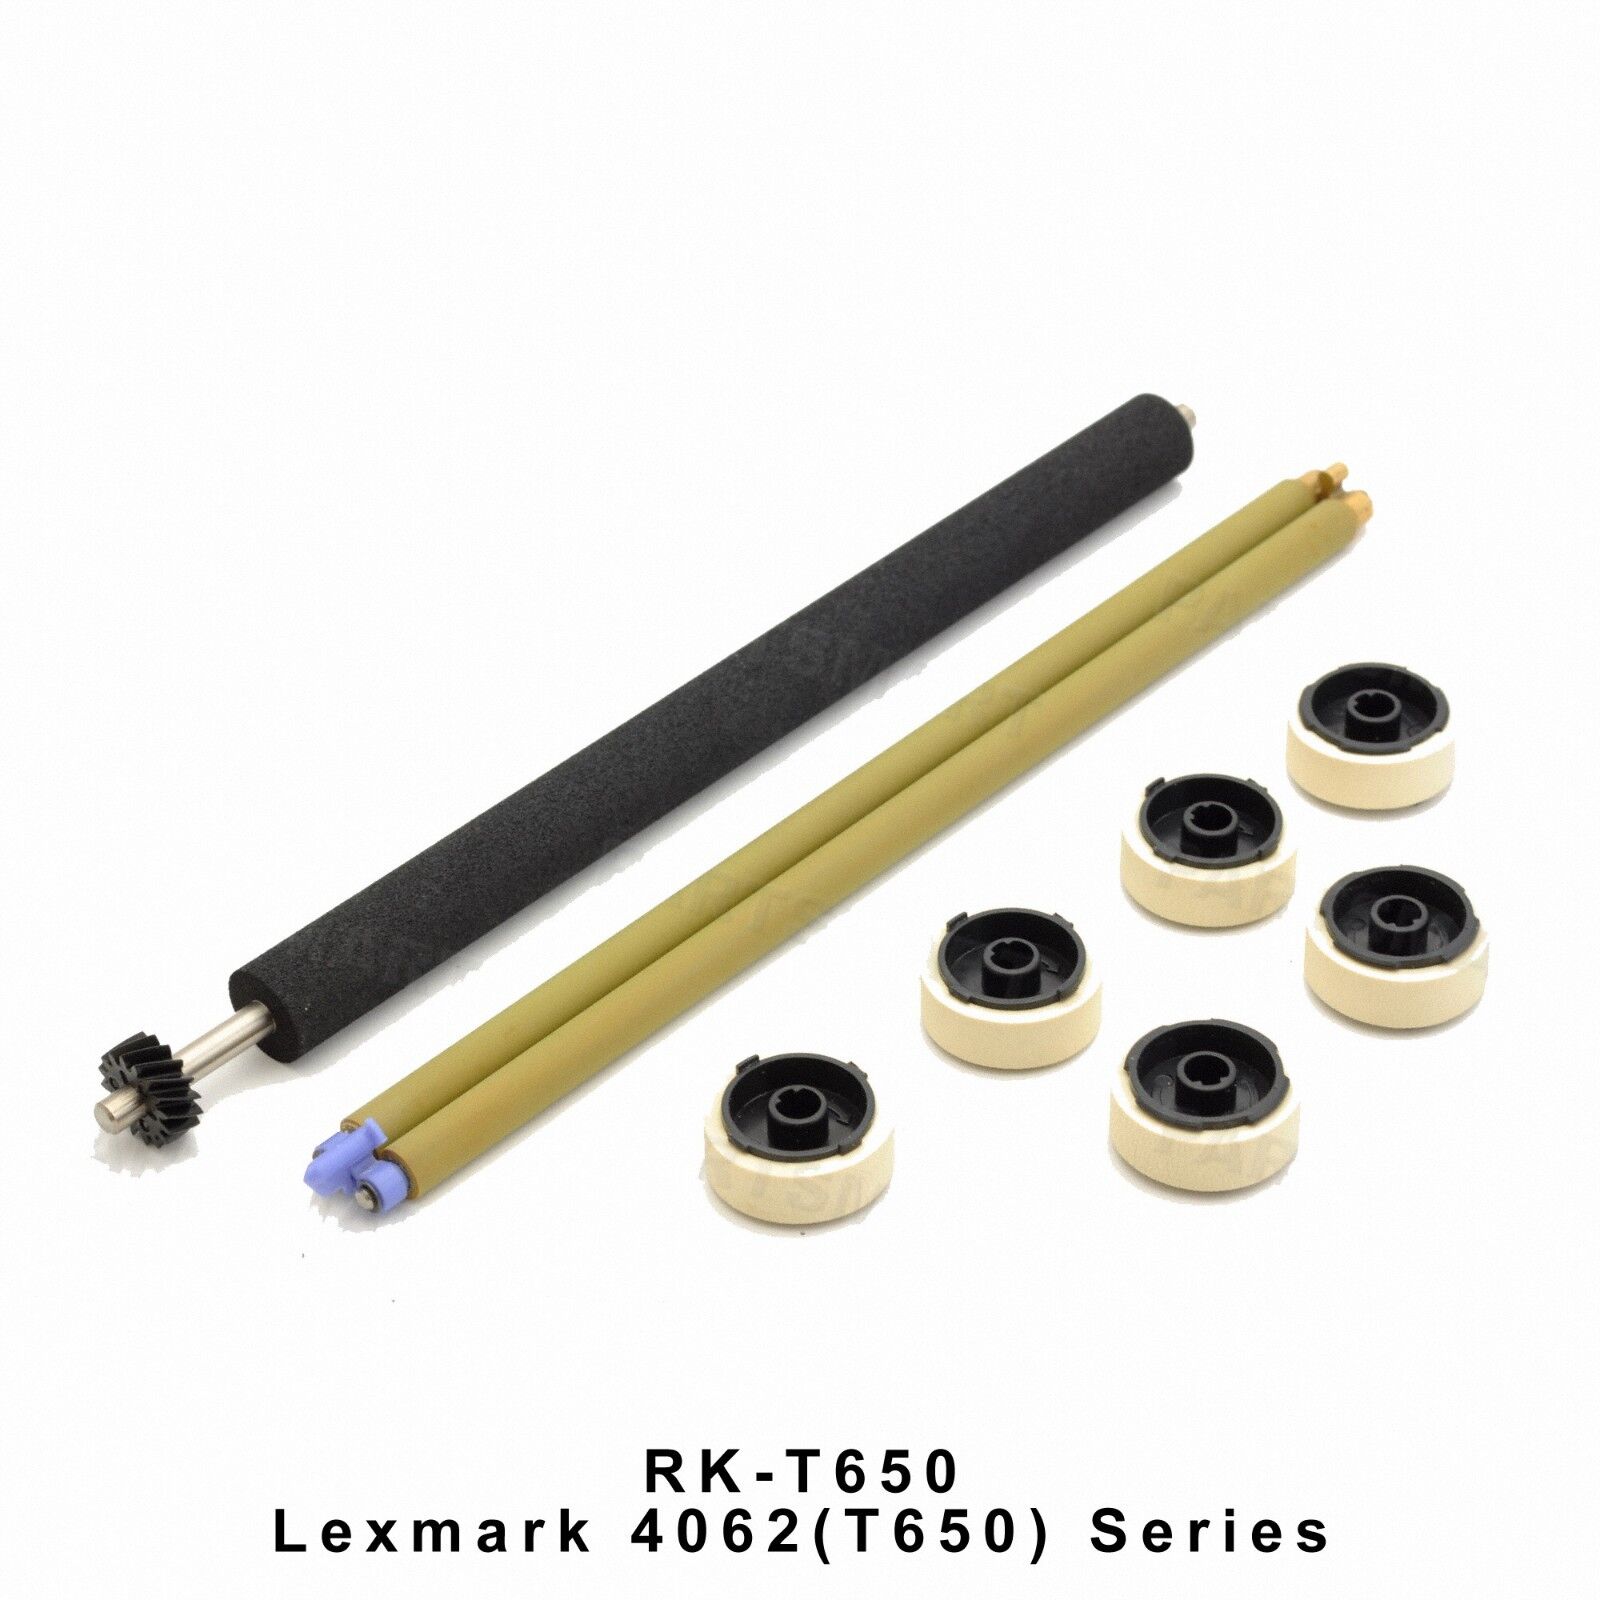 Lexmark 4062 T650 Preventive Maintenance Roller Kit RK-T650 OEM Quality